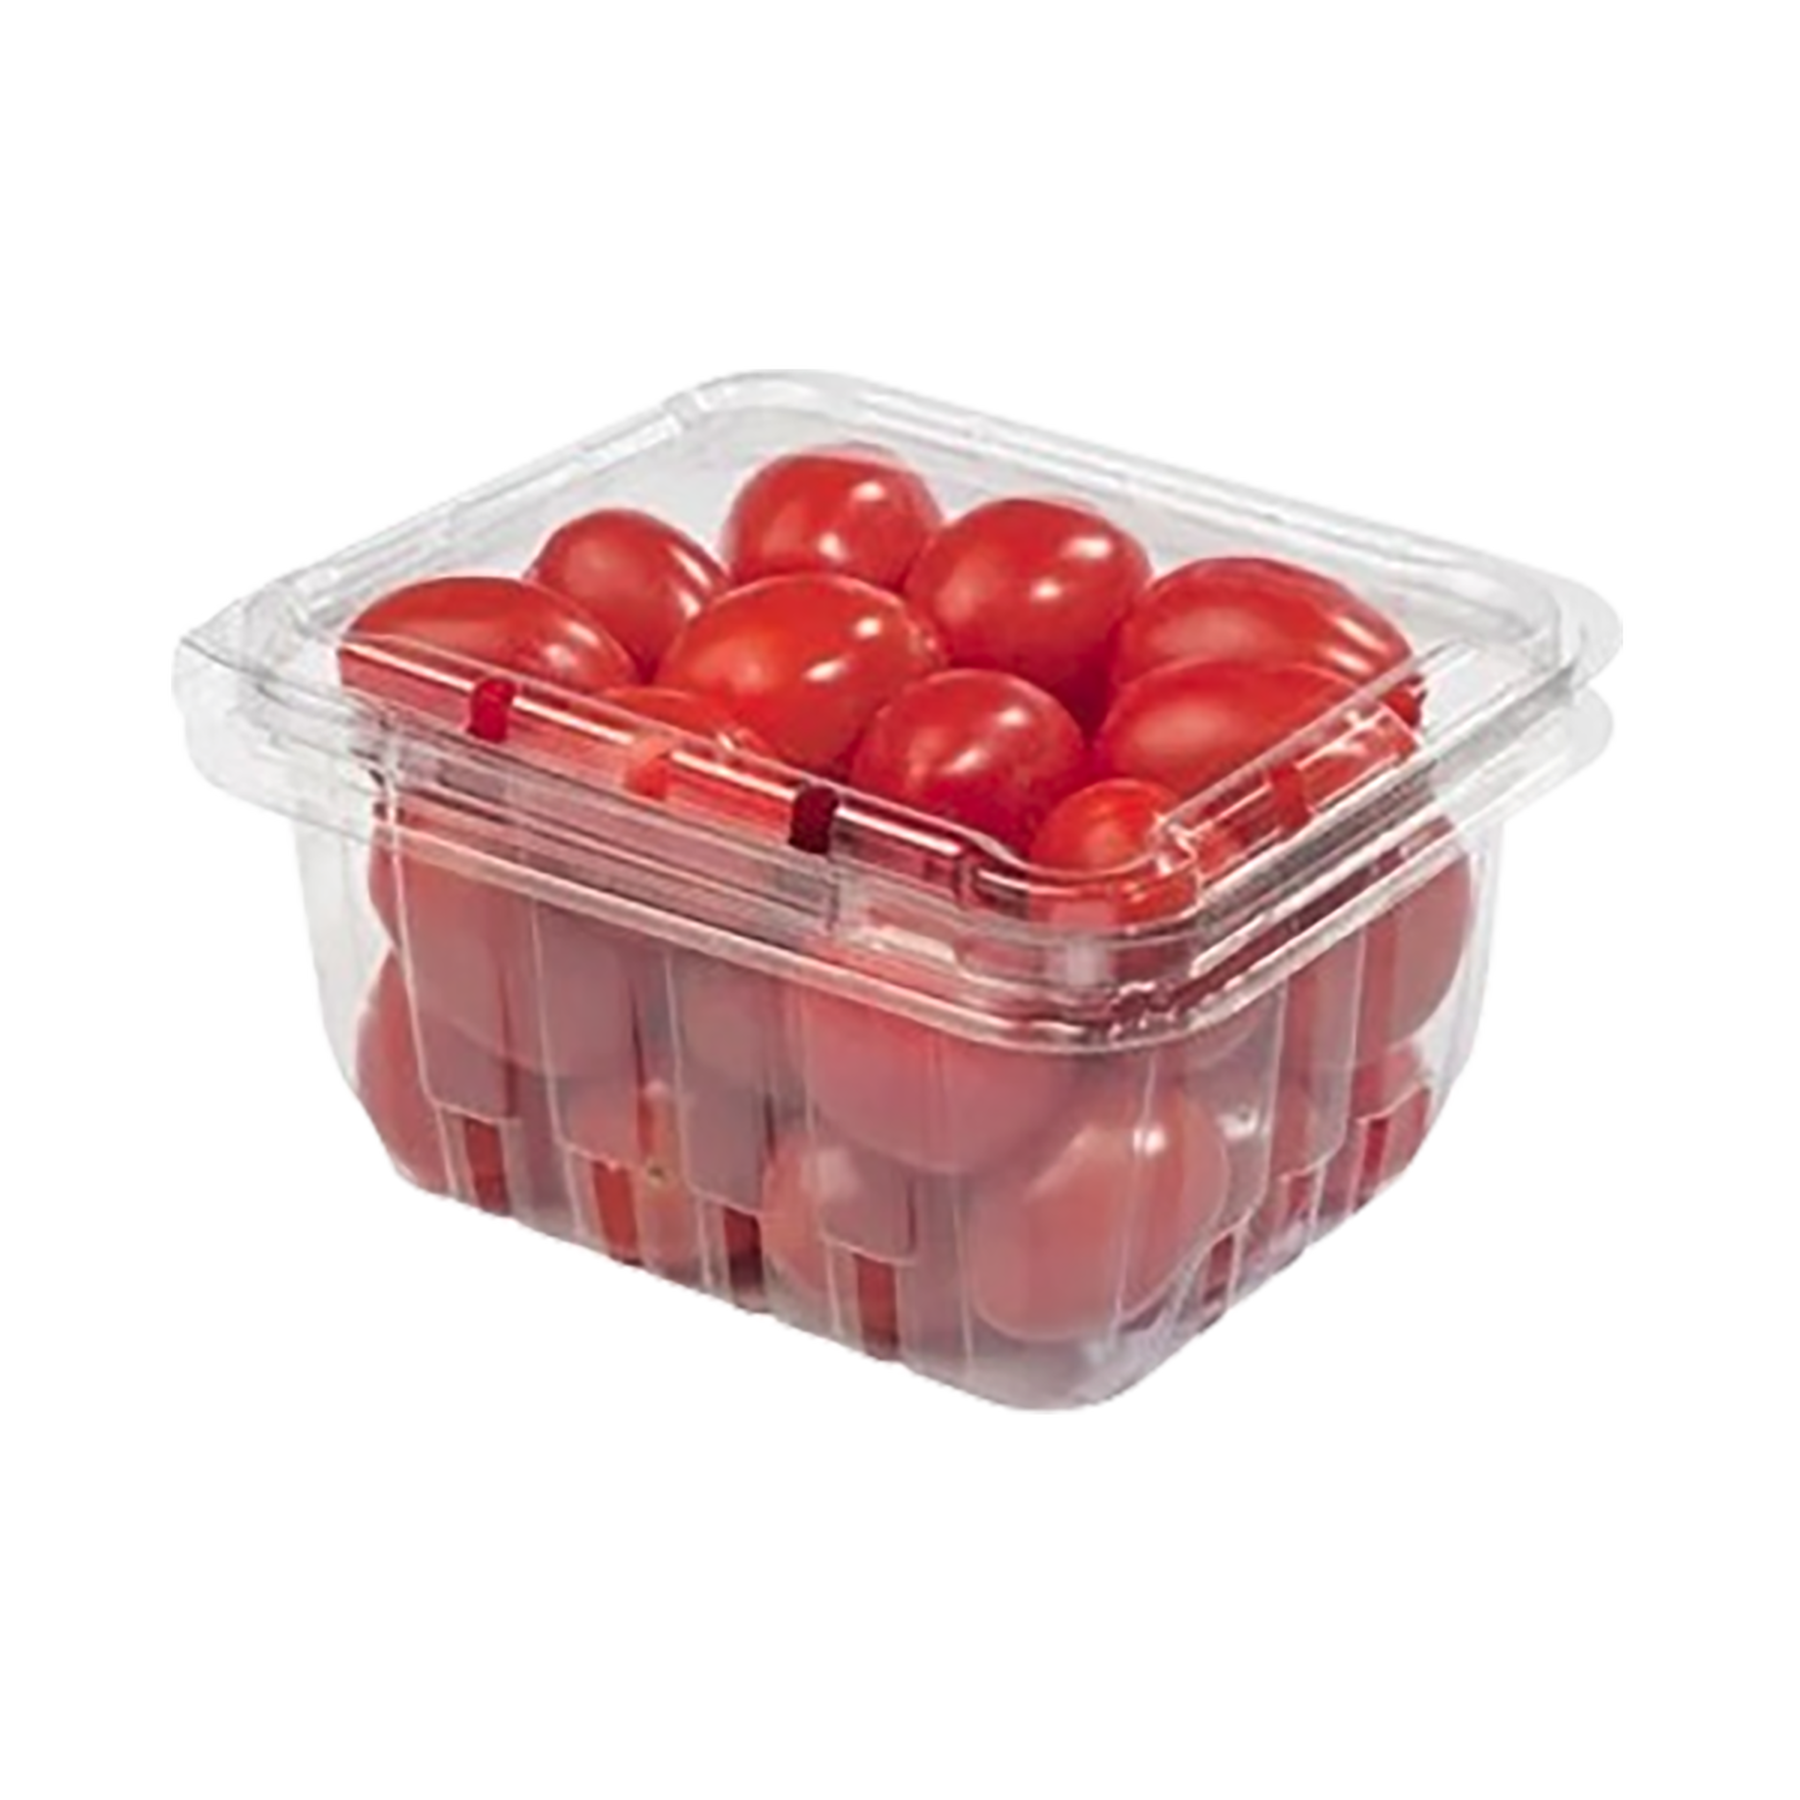 Tomate Cereja 300g